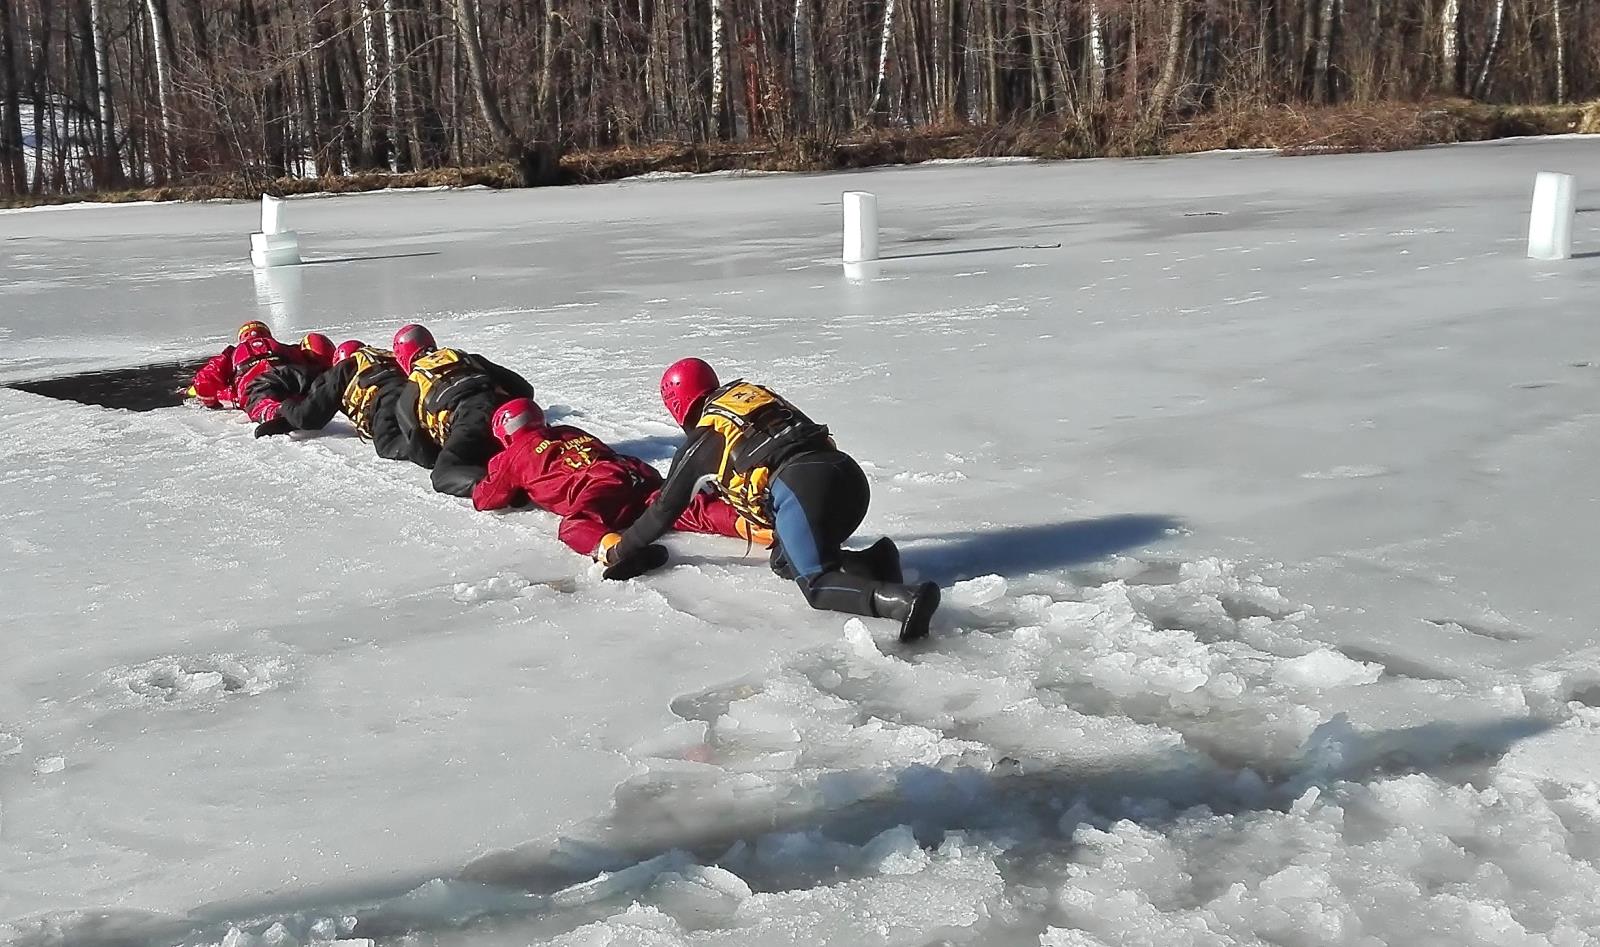 Záchrana osob probořených v ledu